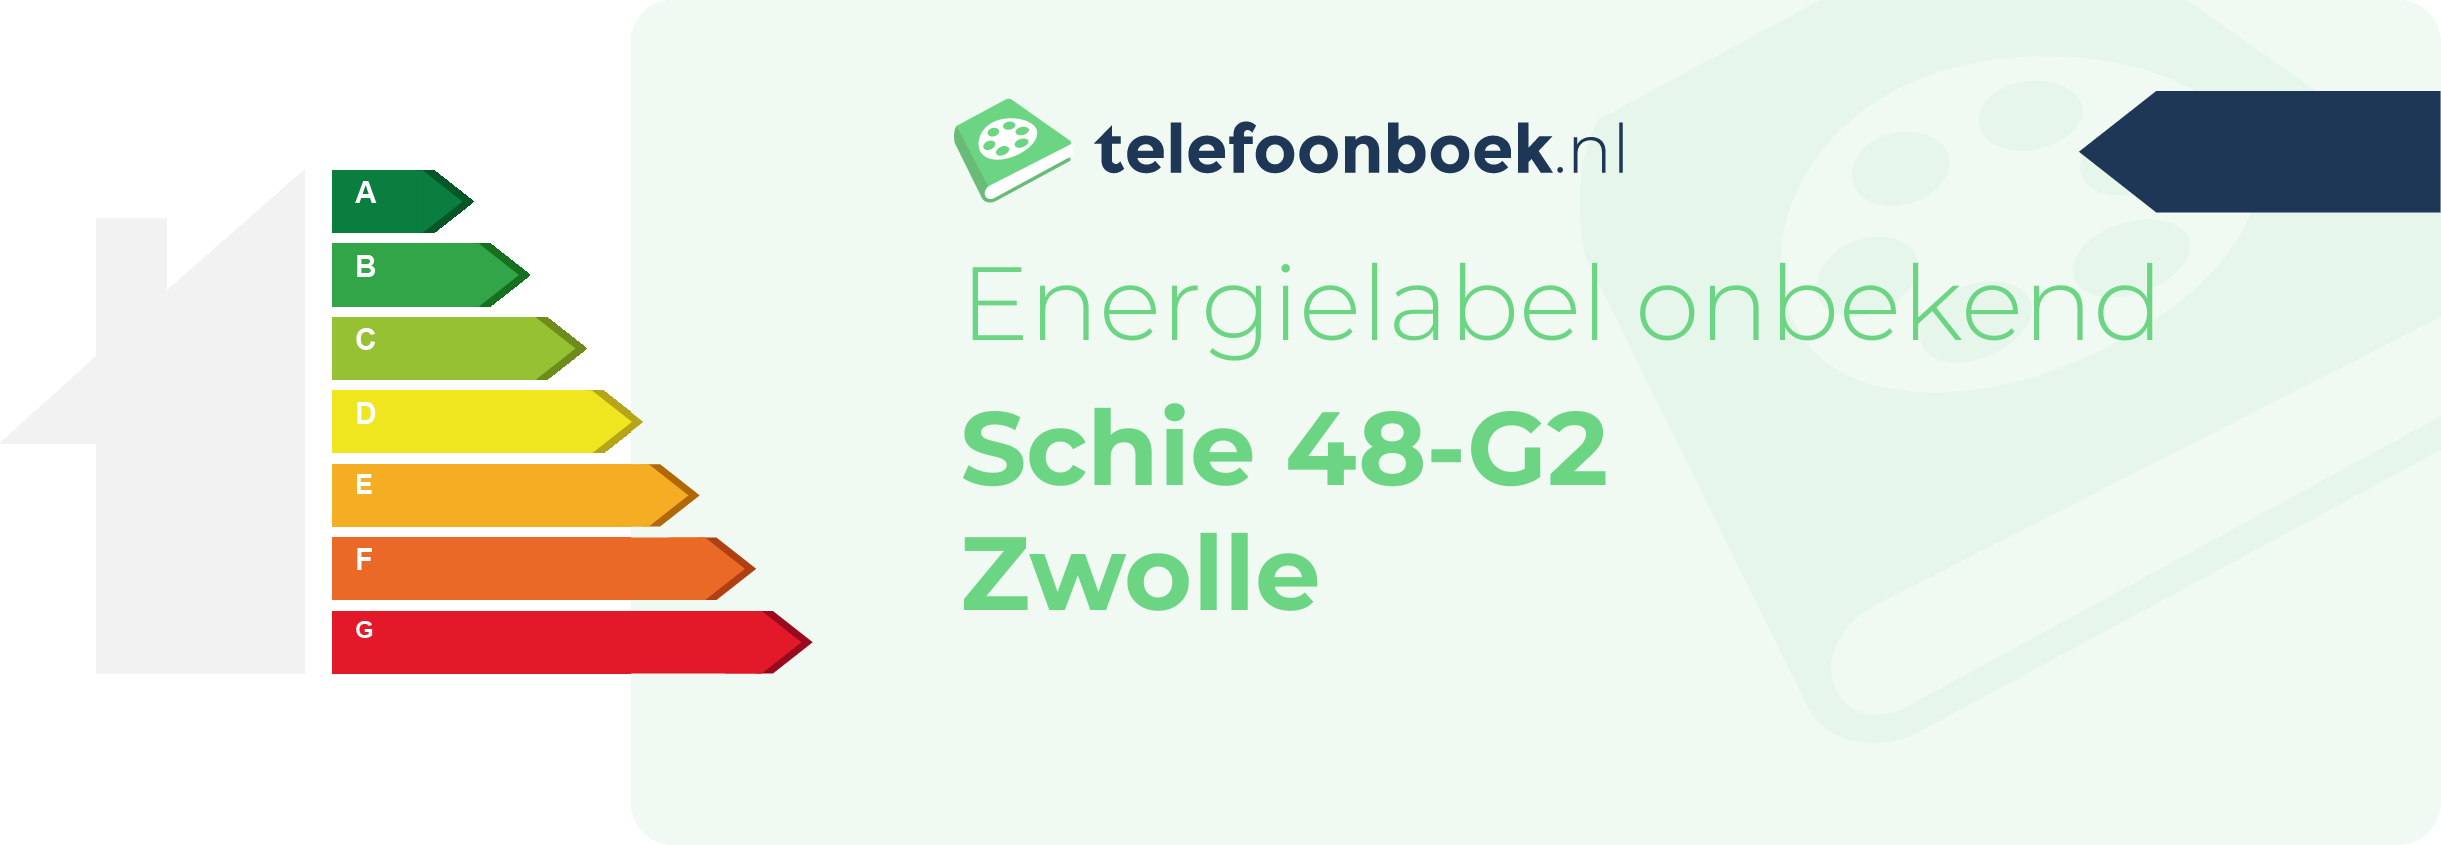 Energielabel Schie 48-G2 Zwolle